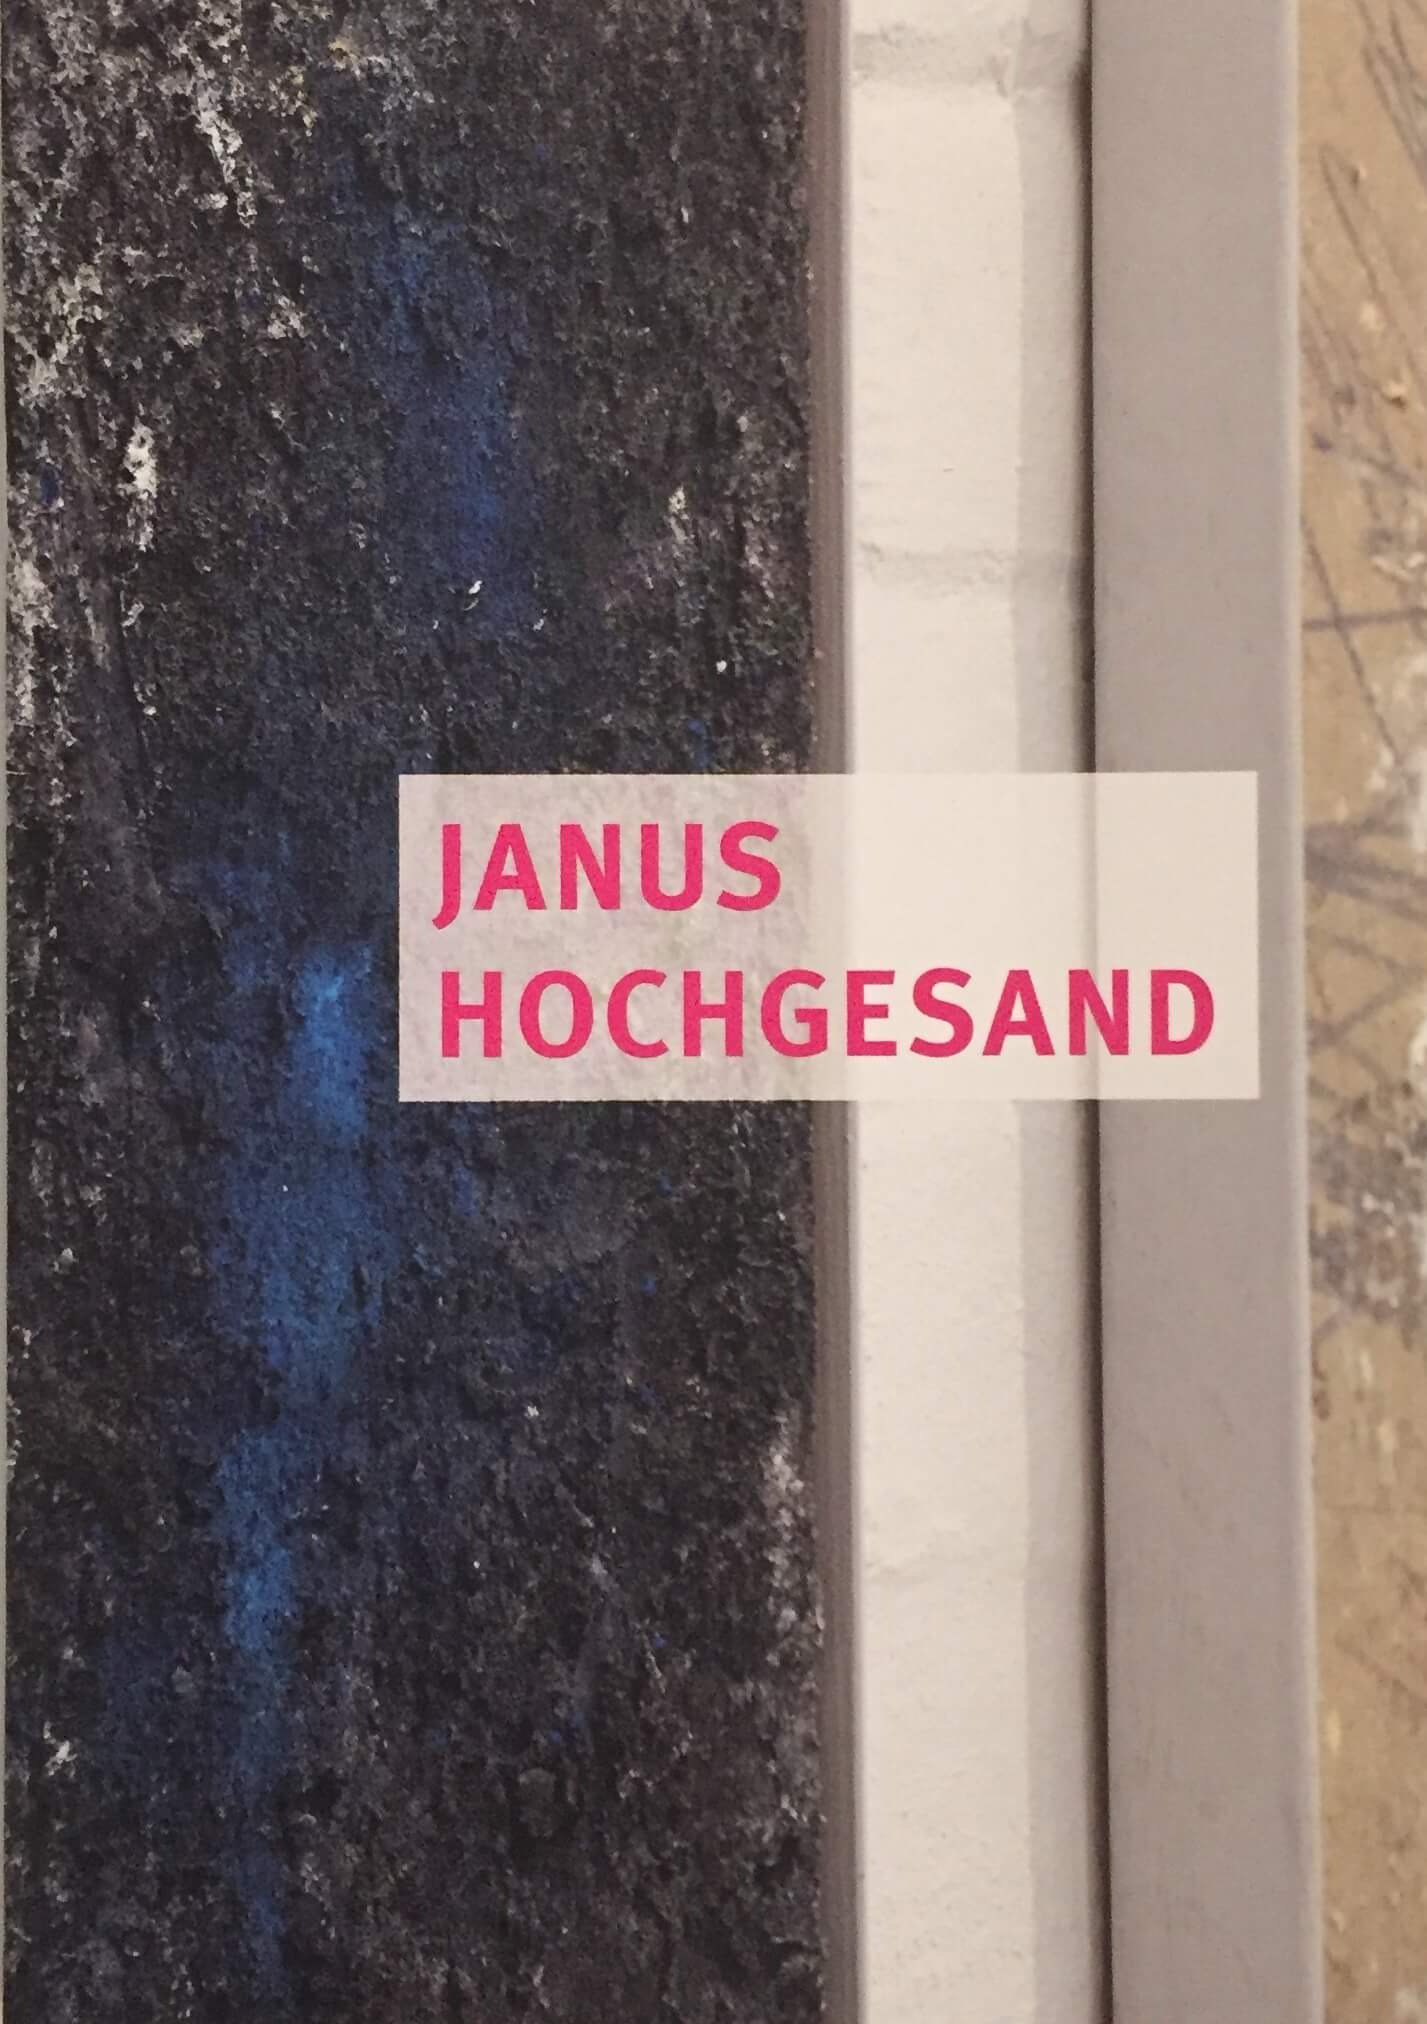 JANUS HOCHGESAND – HIGH INTENSITY PAINTING